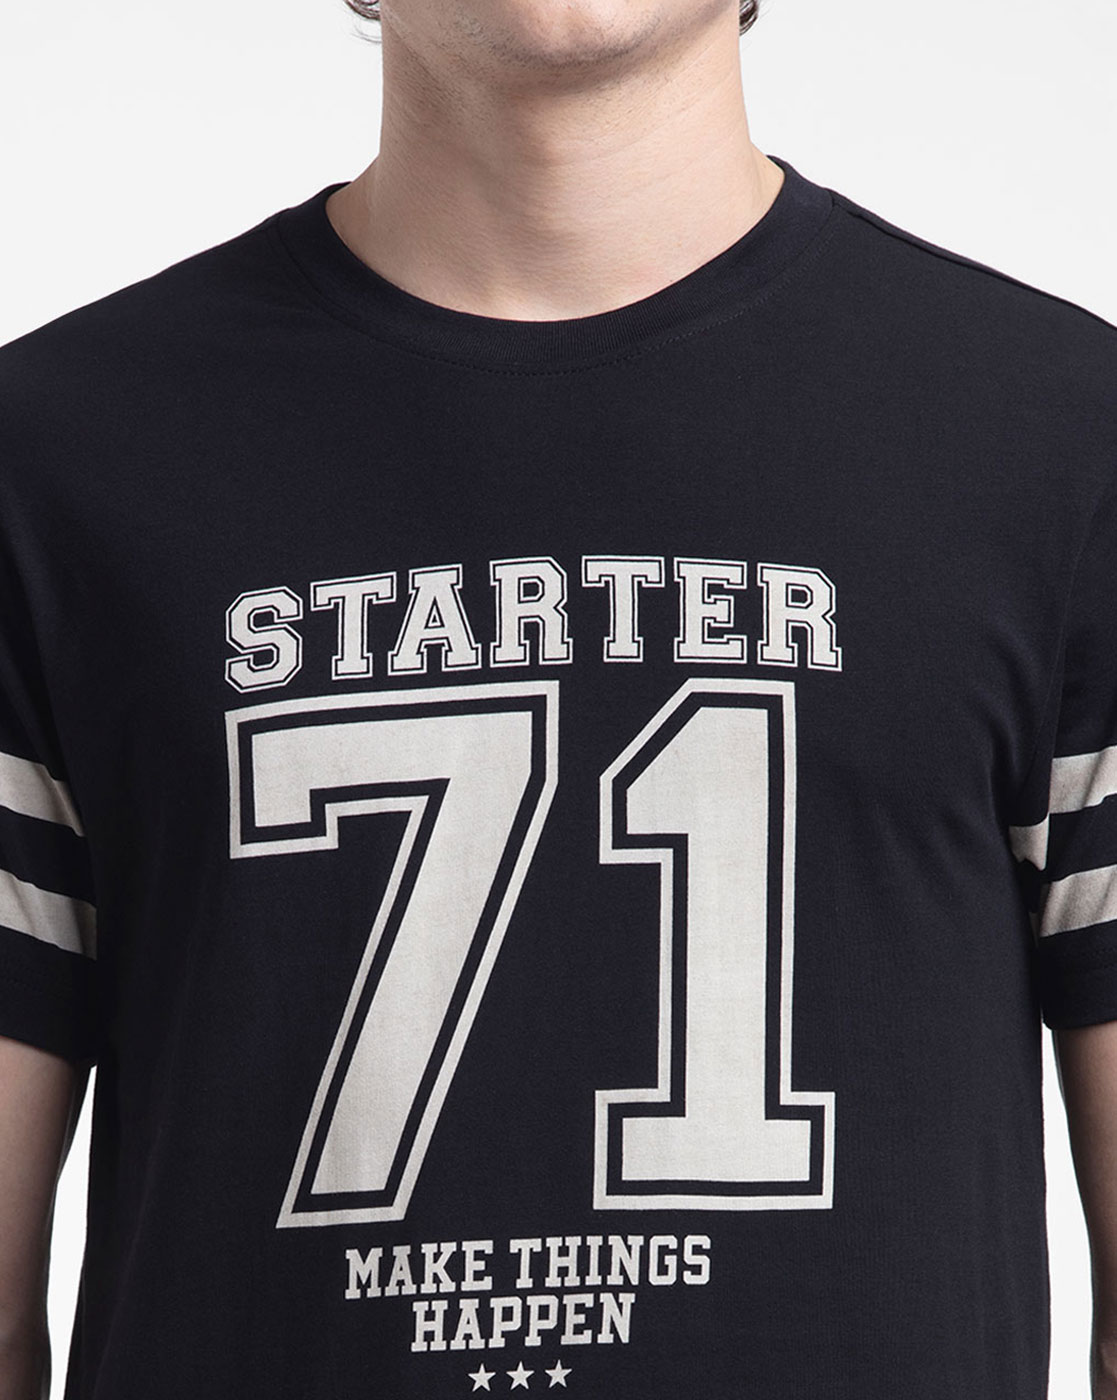 Starter Men Casual Wear T-Shirt